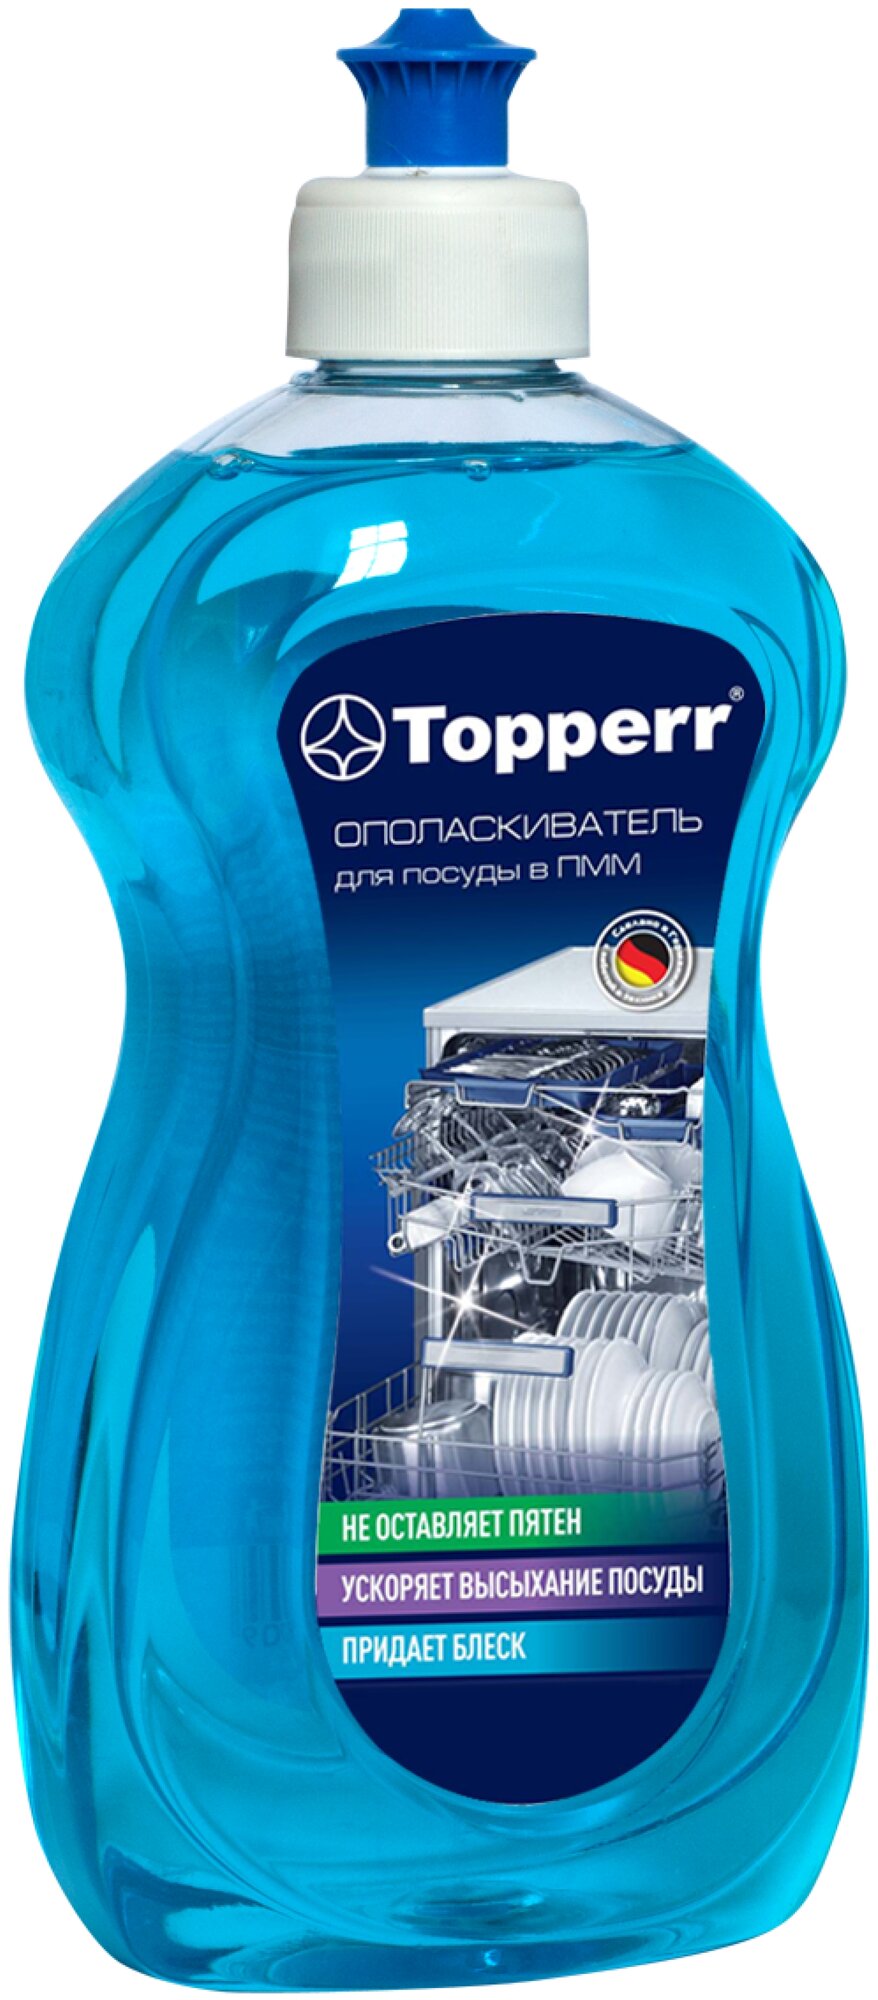 Набор для посудомоечной машины Topperr стартовый